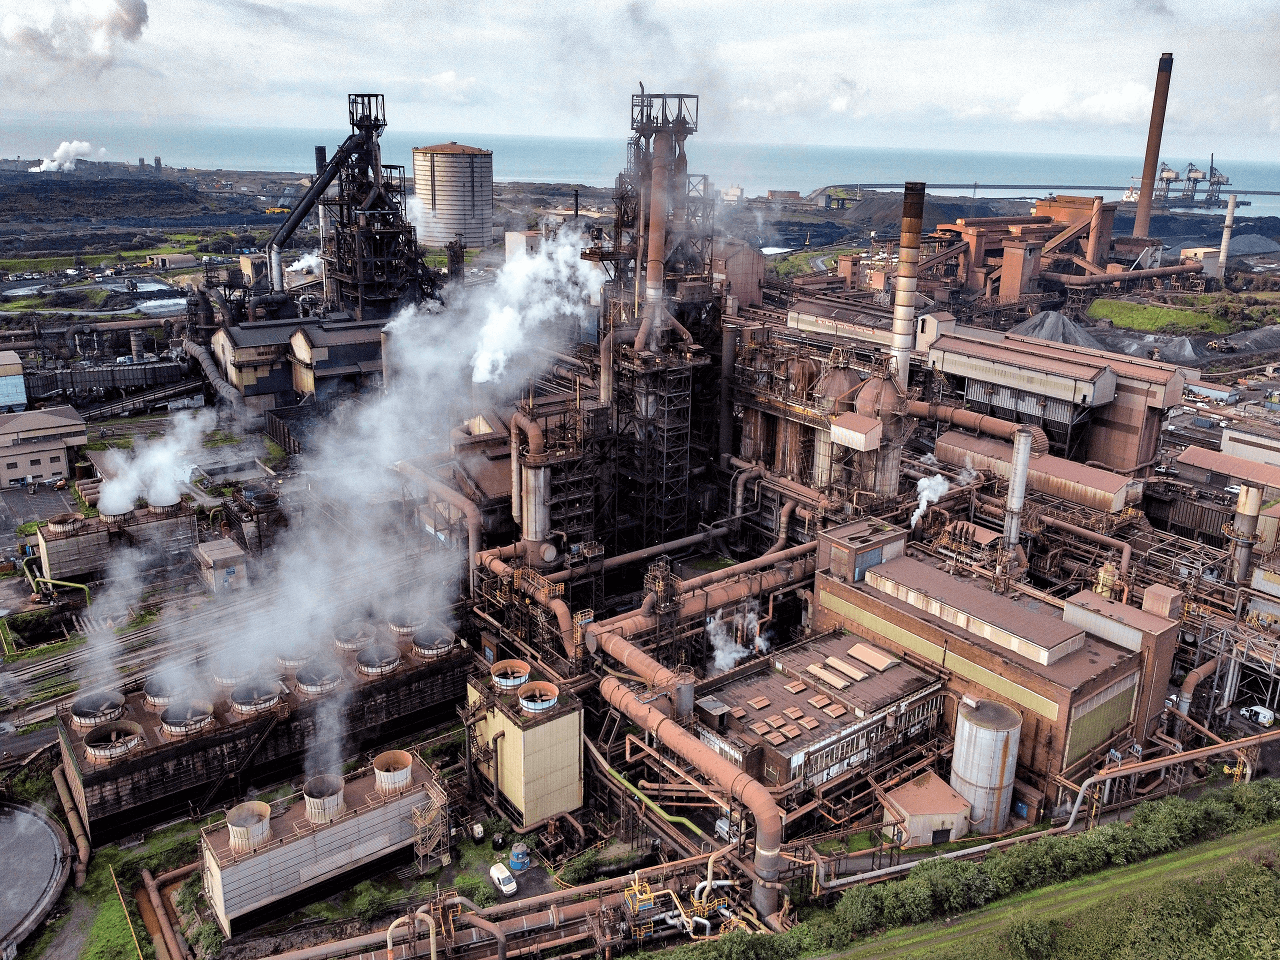 Birleşik Krallık Bazı Çelik Ürünlerine Uyguladığı Önlemi Askıya Alma Soruşturması Başlattı